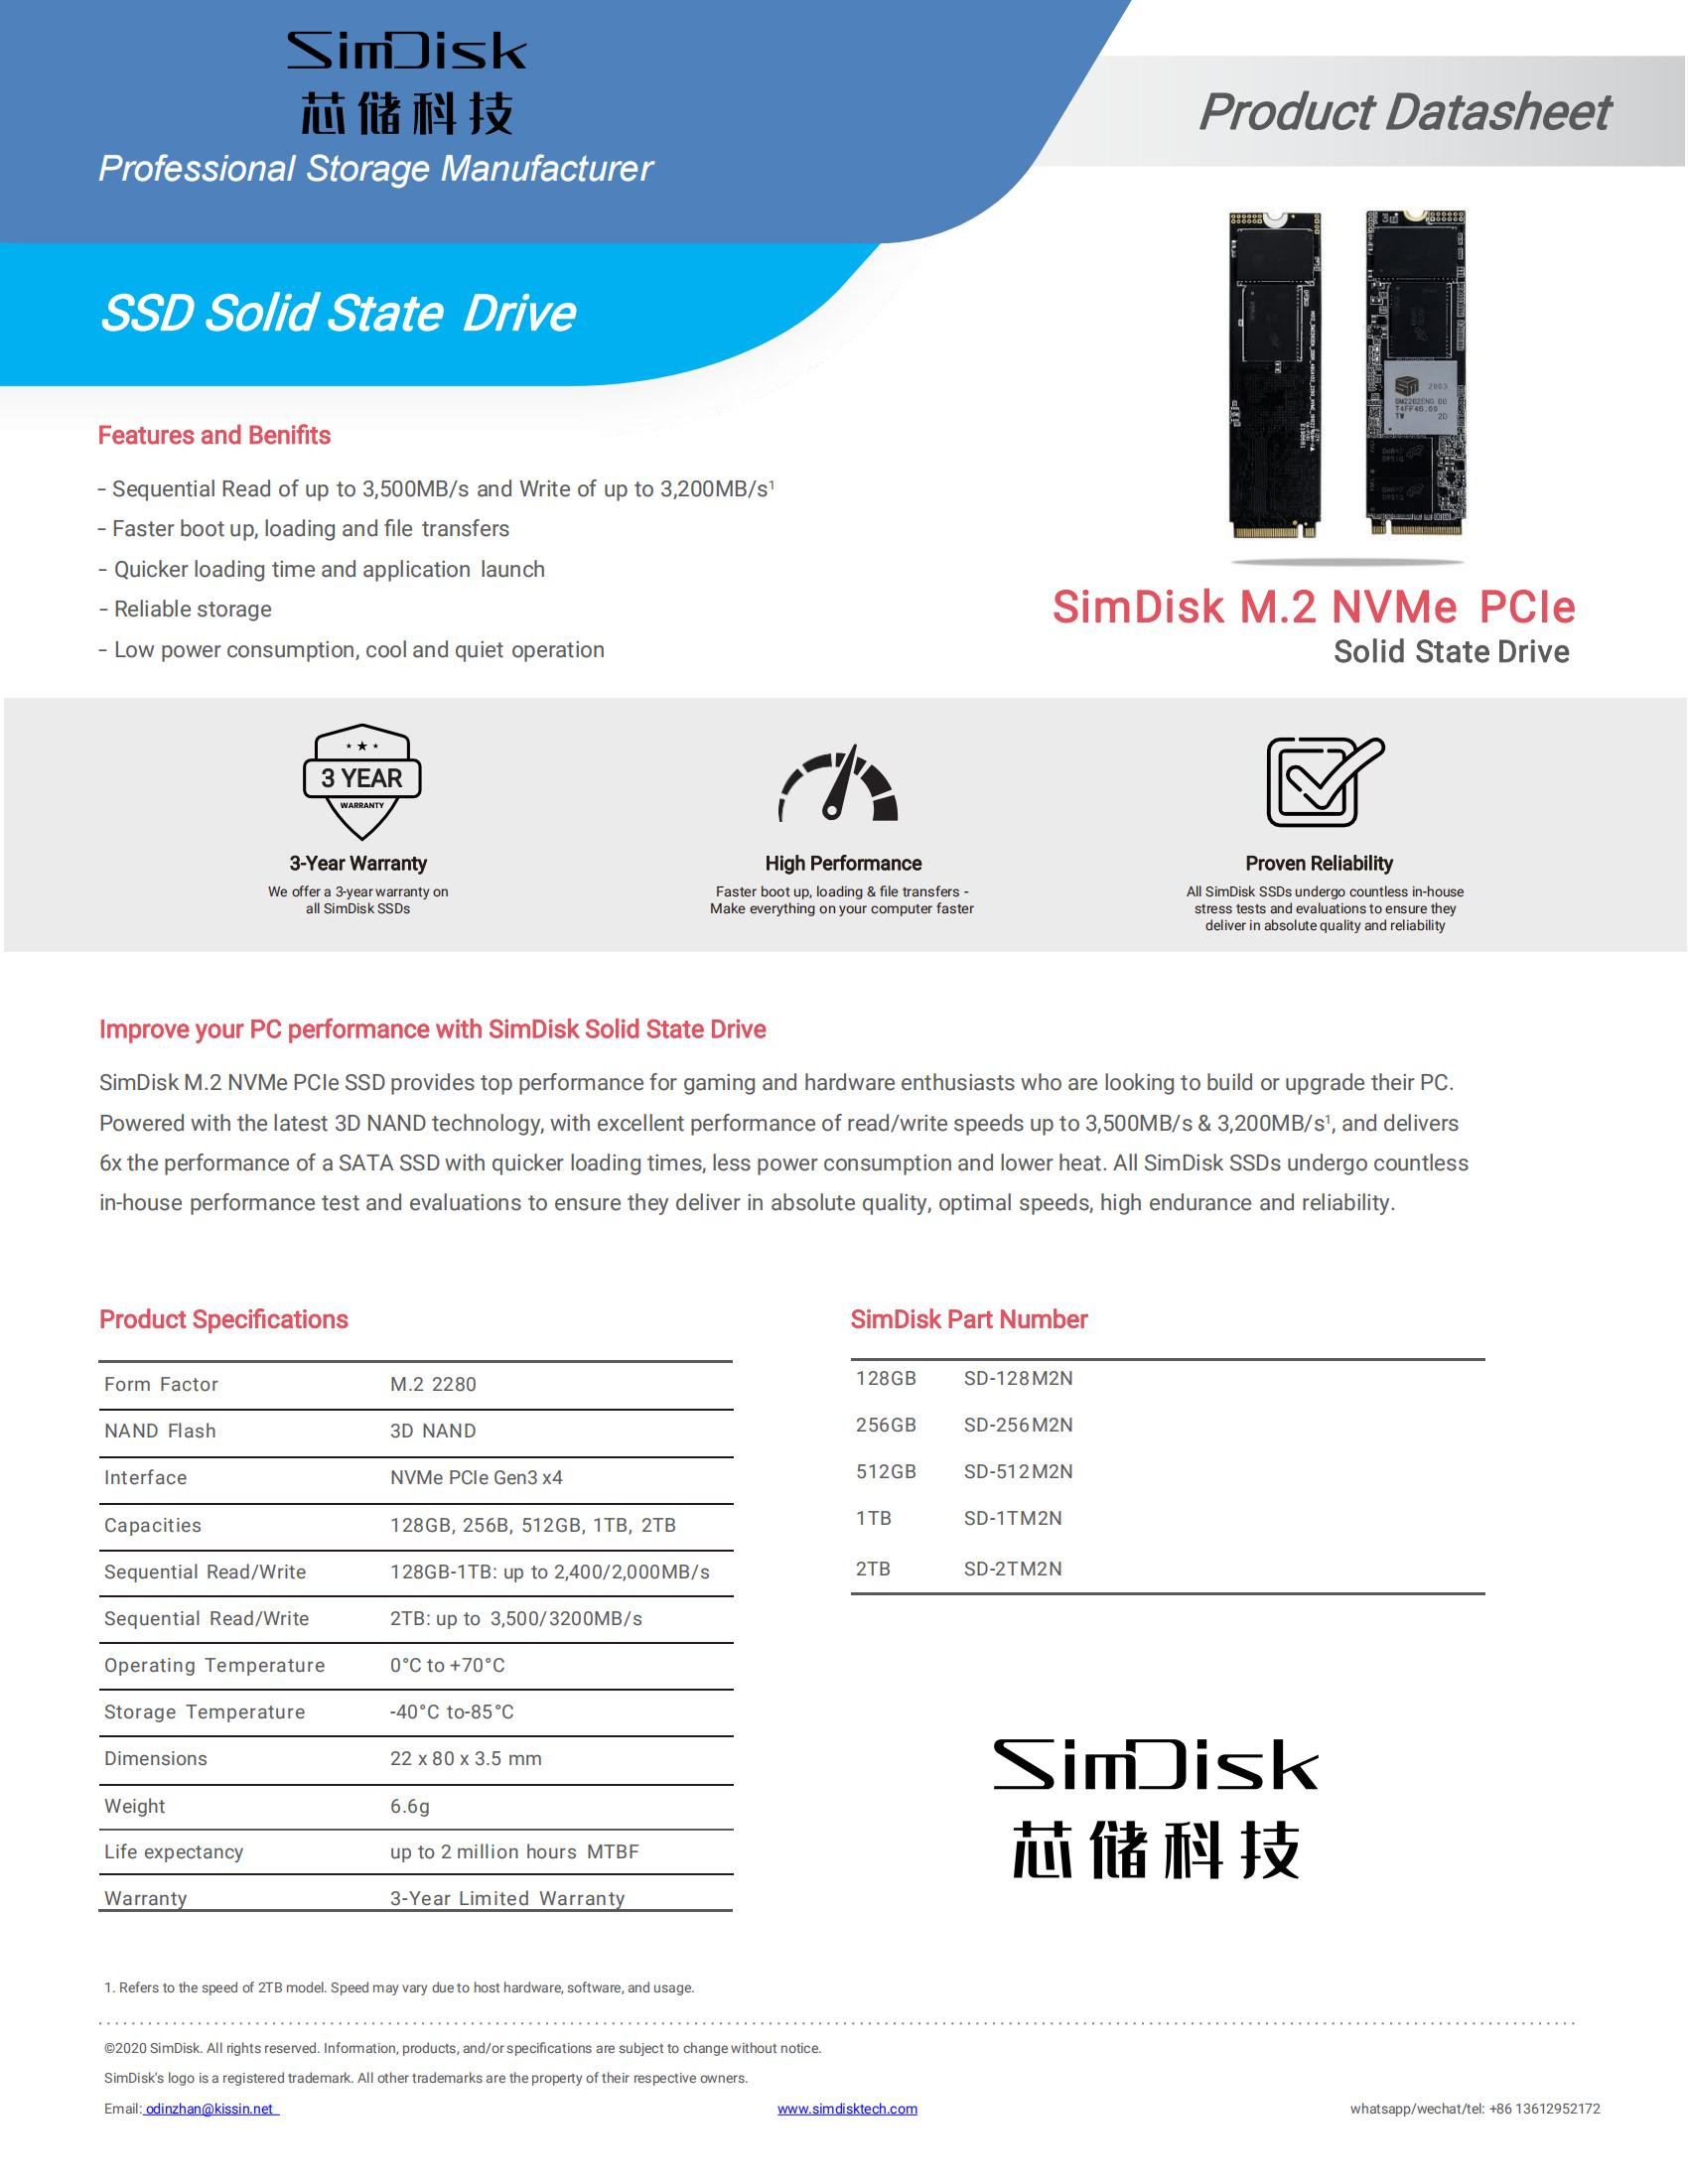 SimDisk M.2 NVME SSD adatlap_00